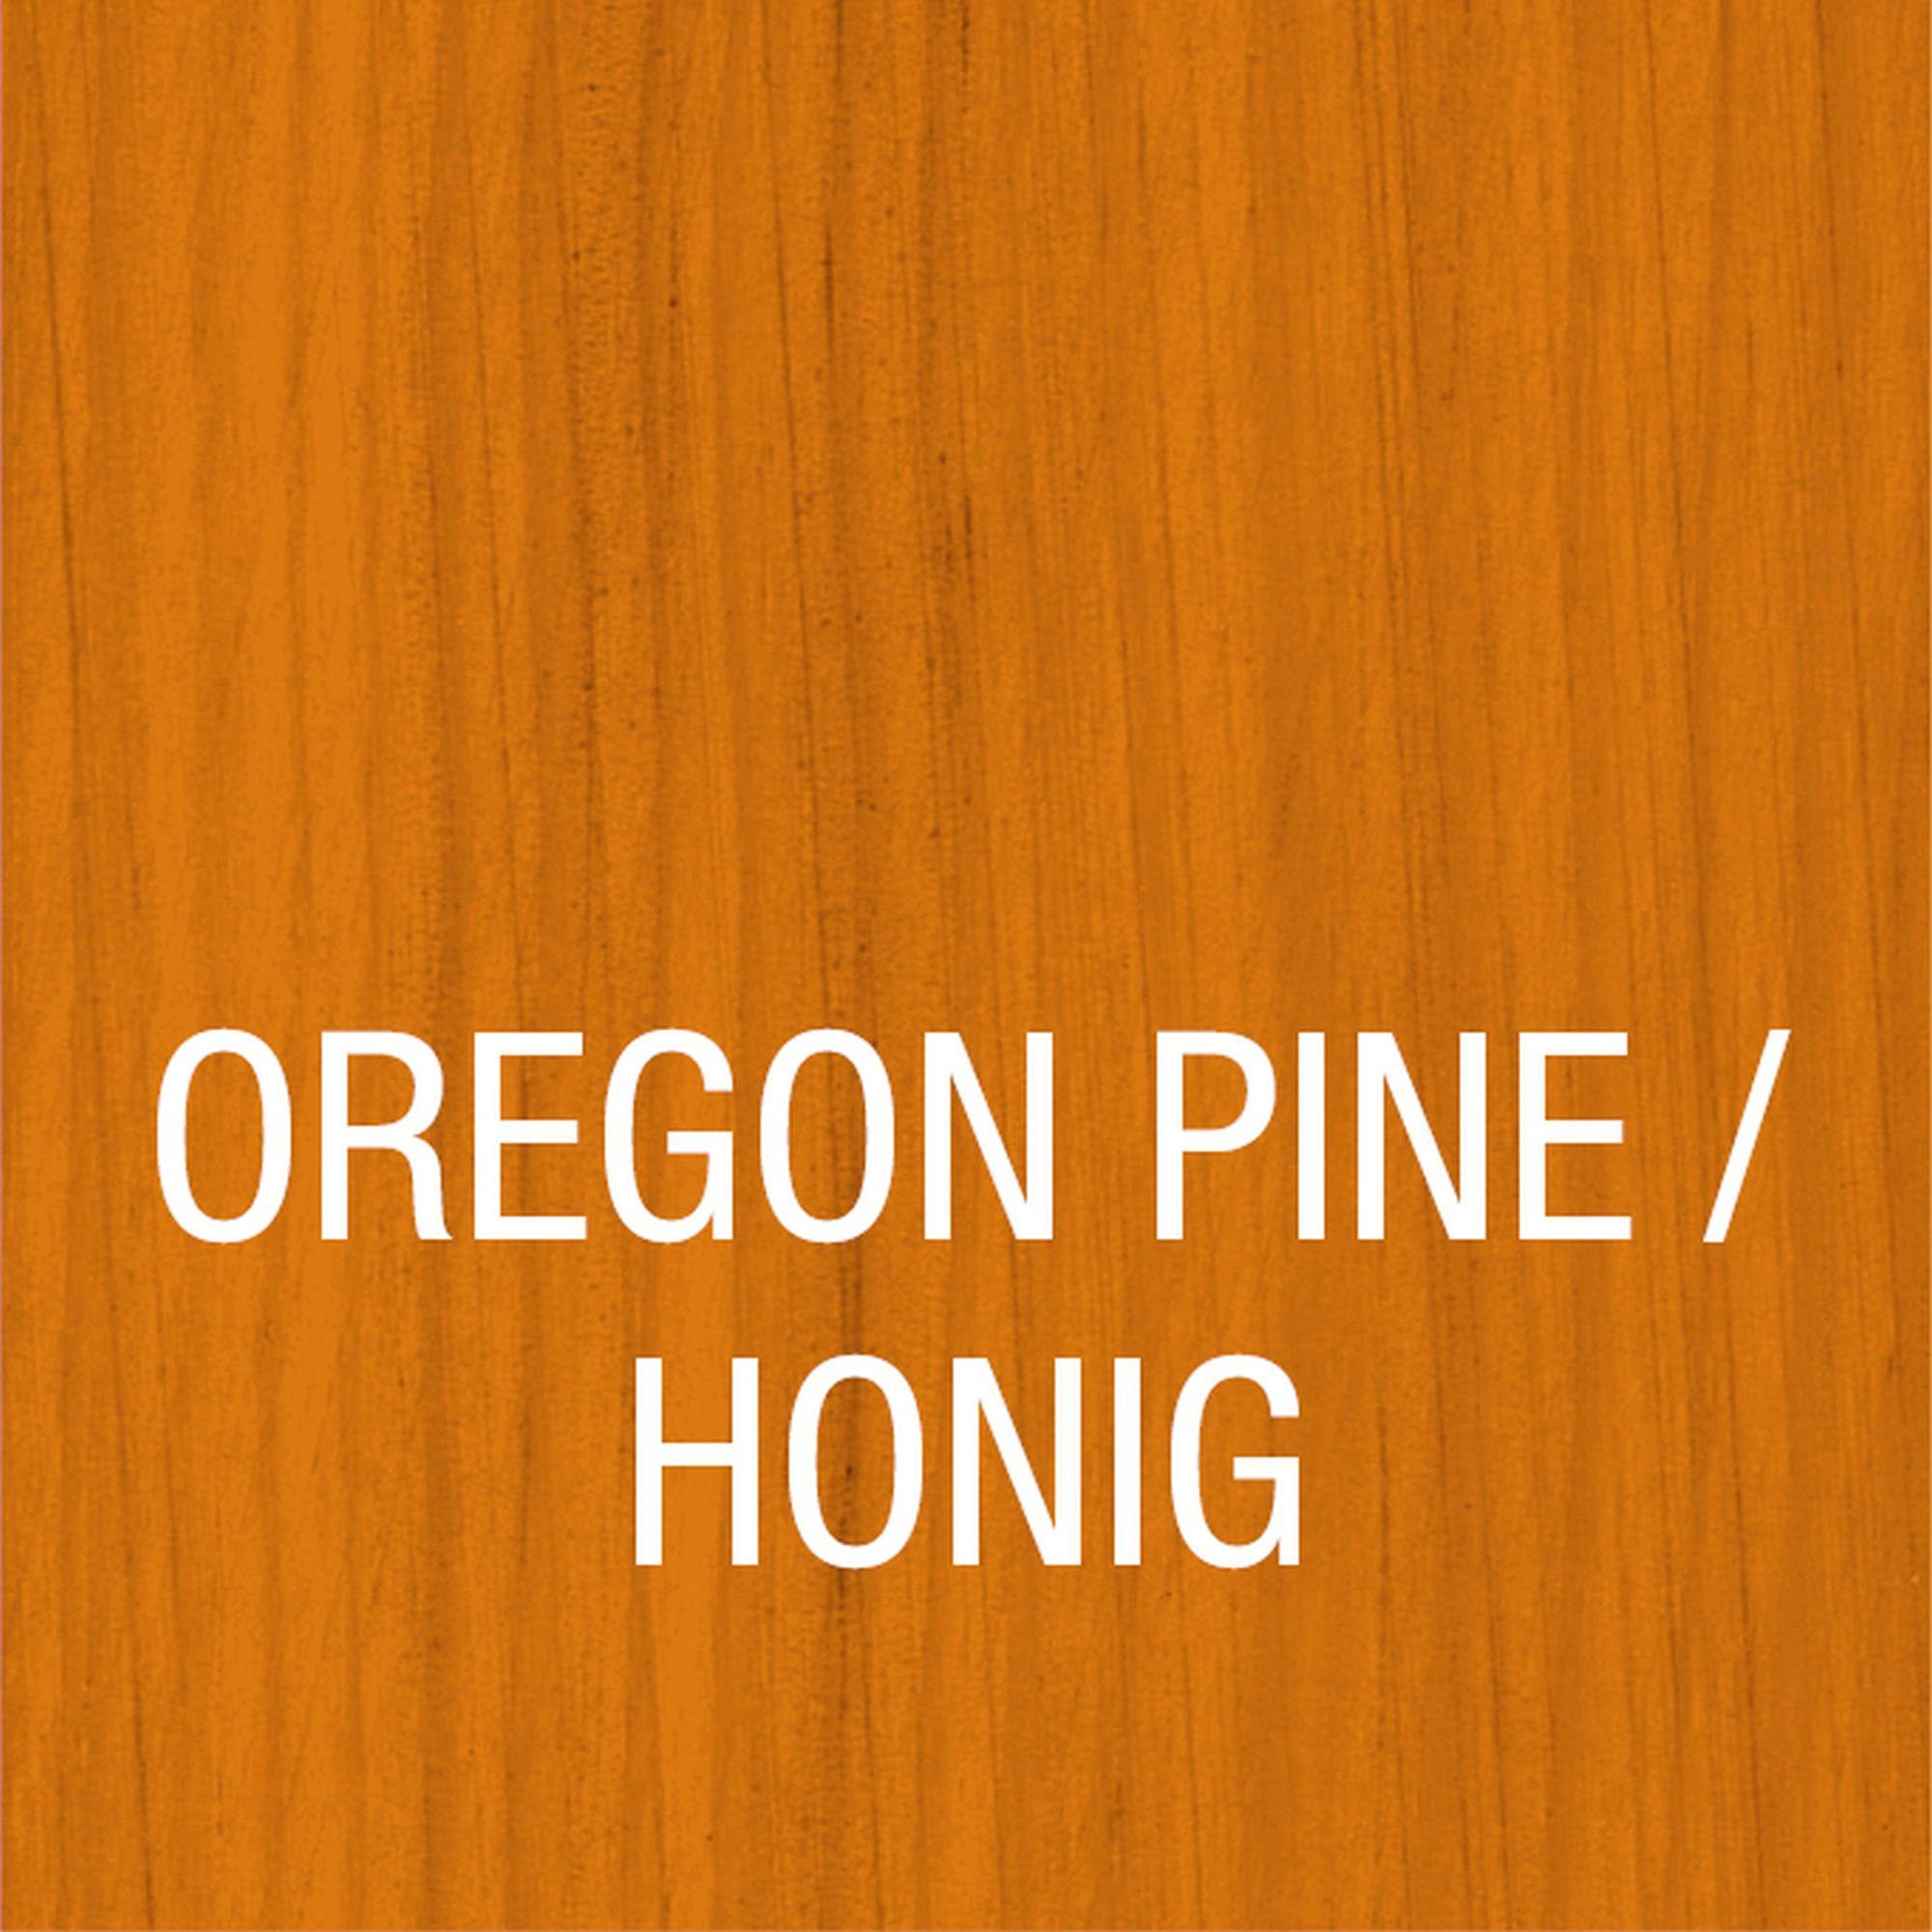 Bondex Holzschutzlasur HOLZLASUR FÜR versch. in Pine AUSSEN, Holzverkleidung, Honig atmungsaktiv, / Wetterschutz Farbtönen Oregon